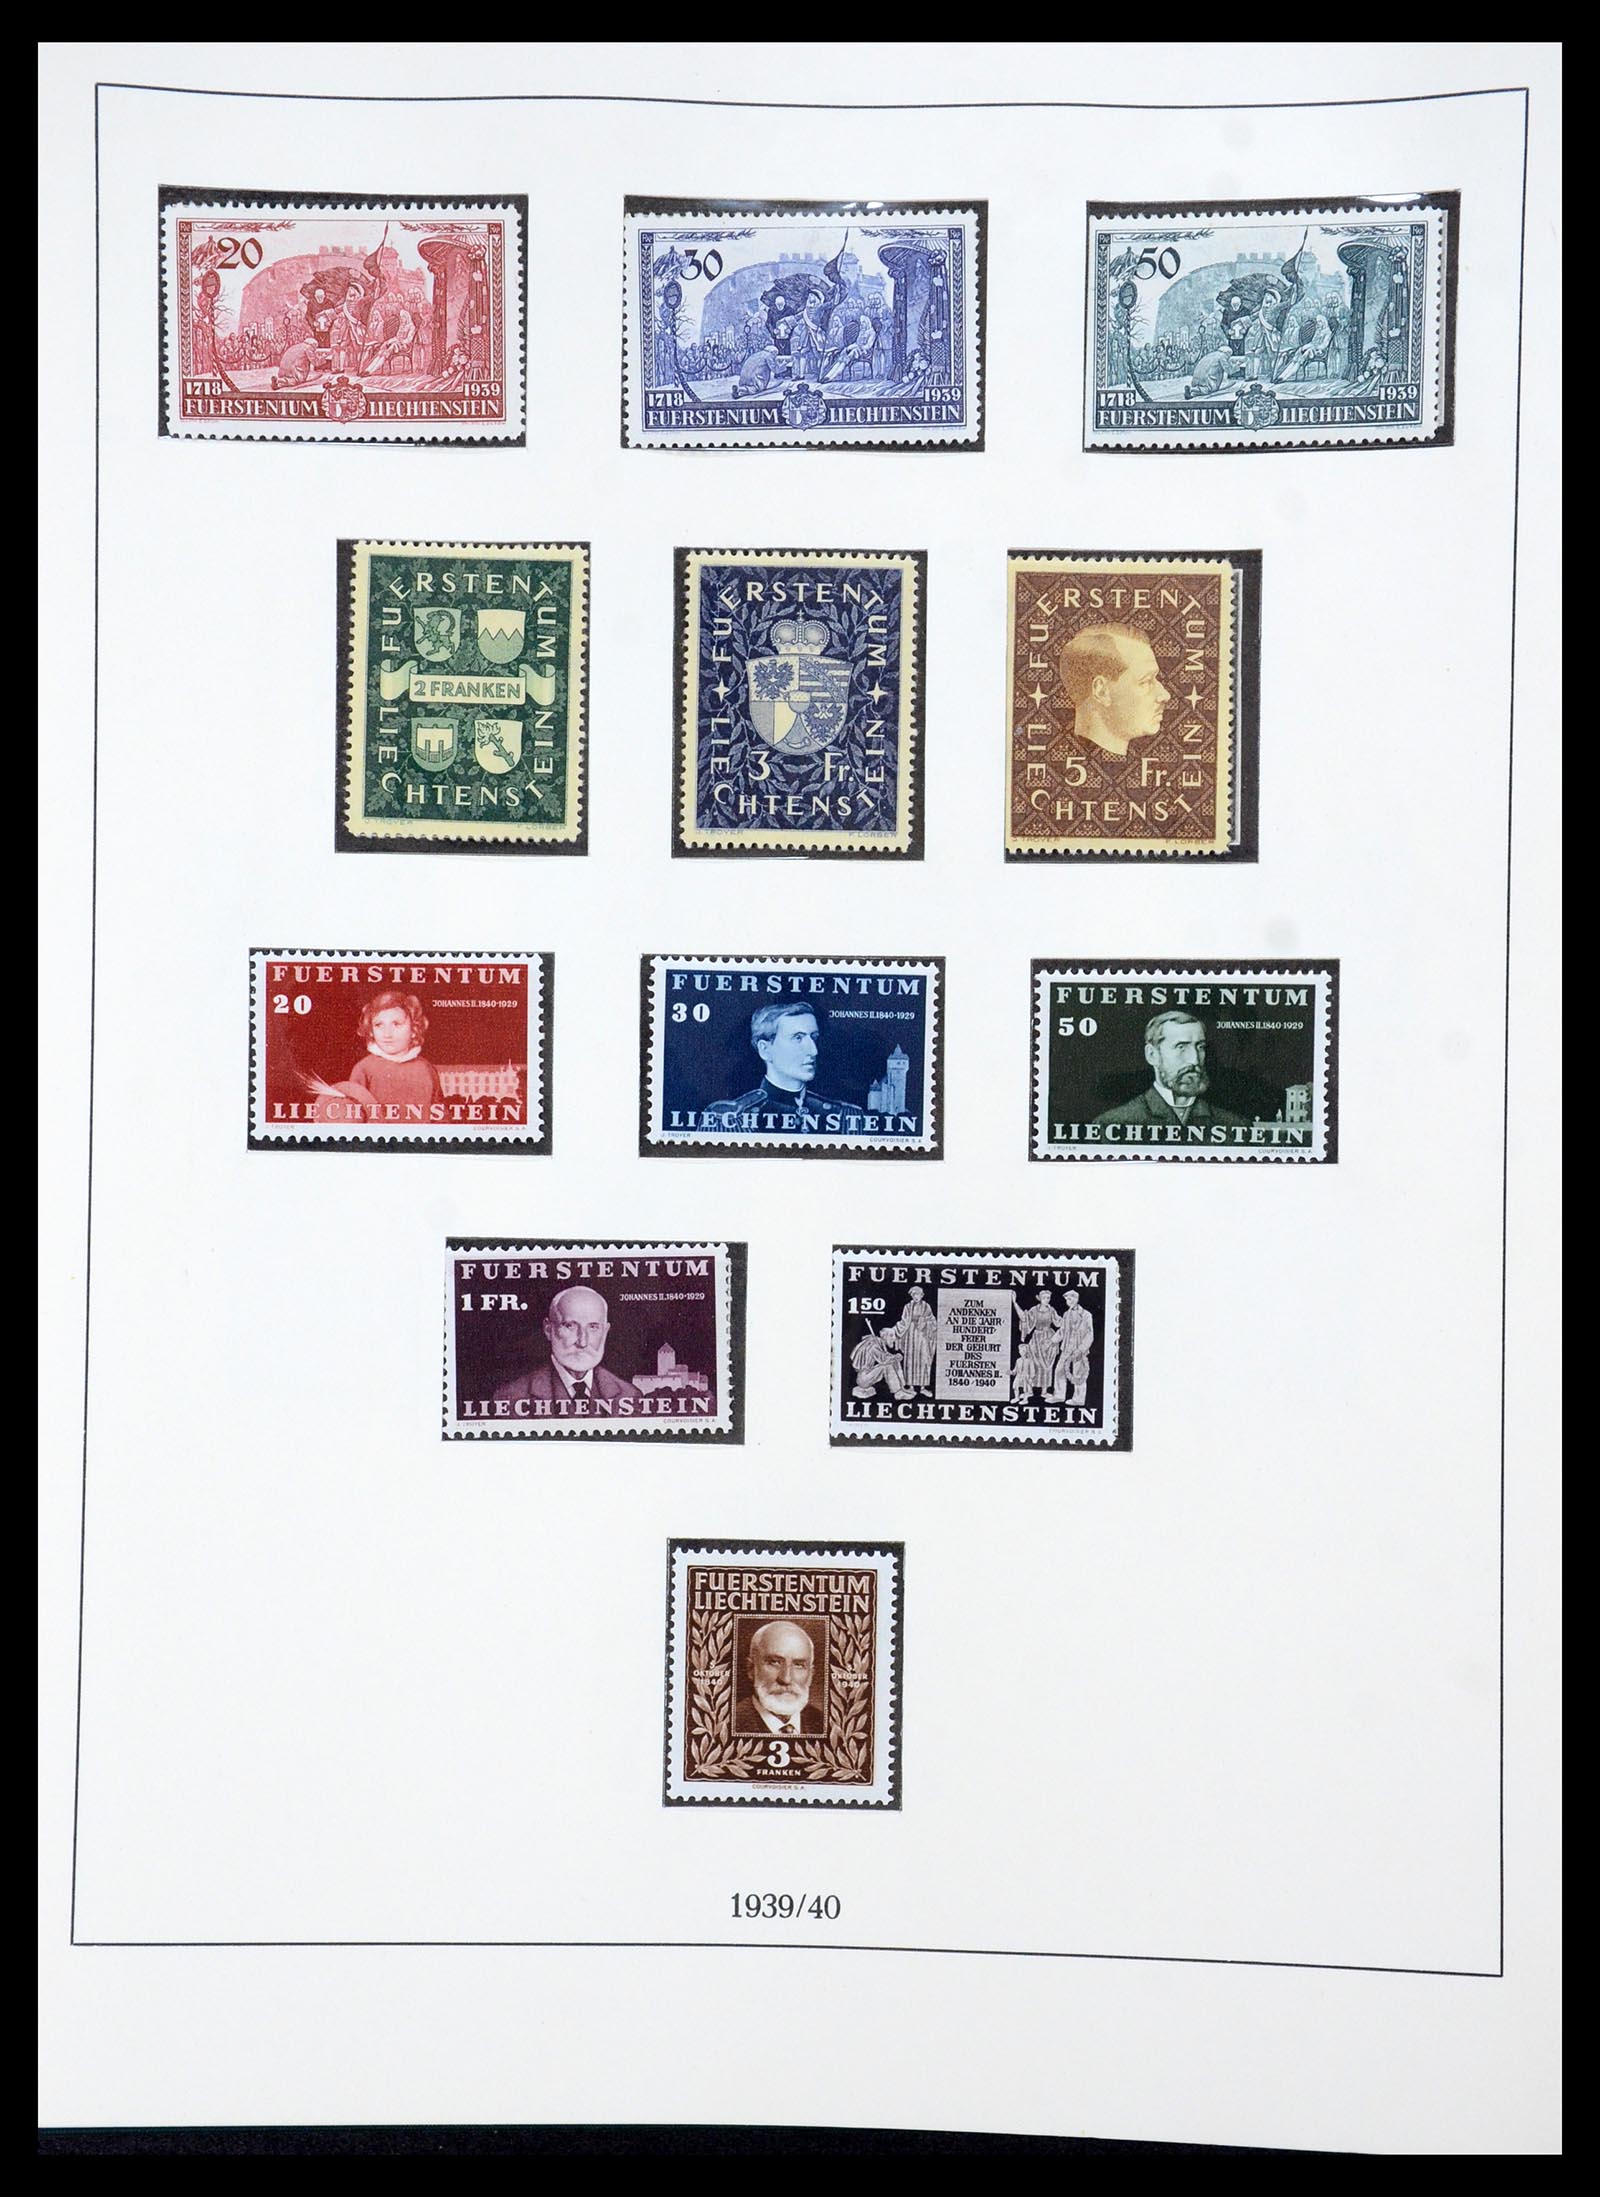 36358 019 - Stamp collection 36358 Liechtenstein 1912-1971.